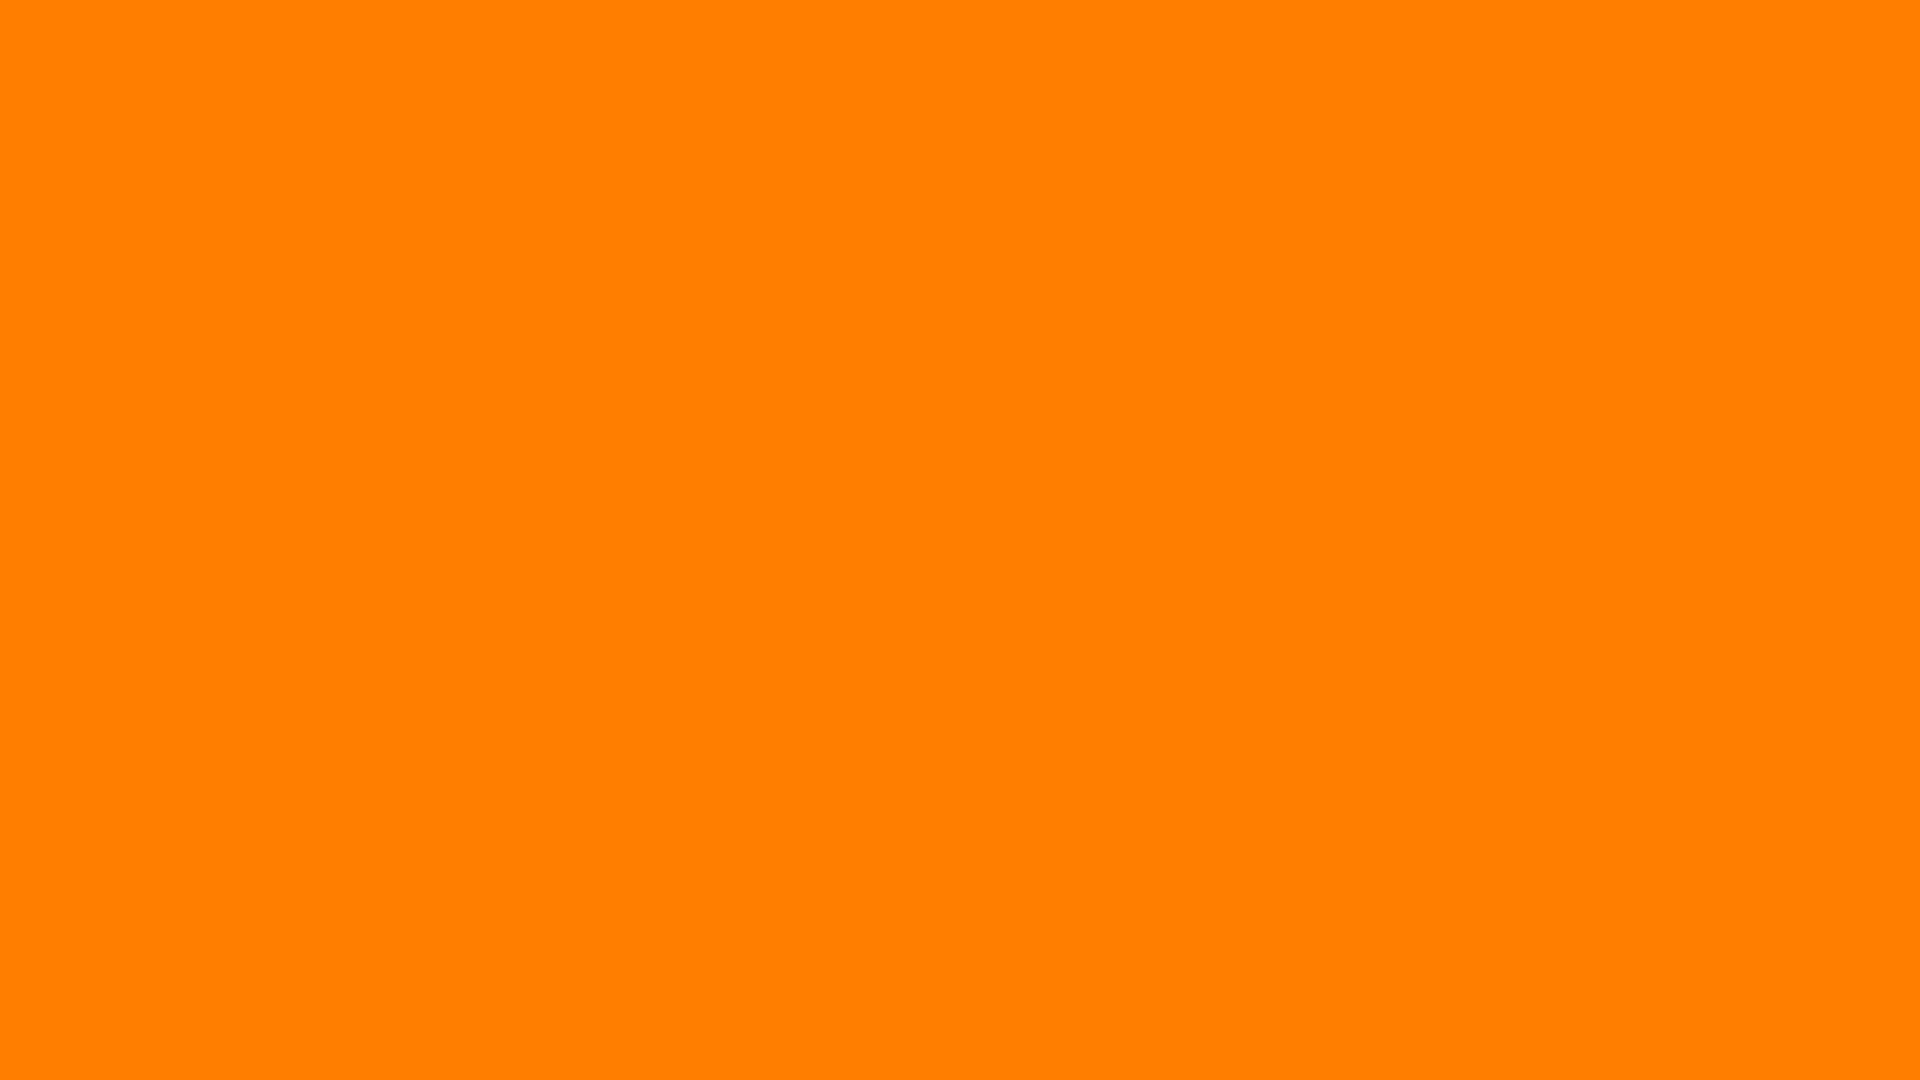 Đơn giản nhưng không kém phần hiện đại, hình nền màu cam đơn sắc làm tăng tính thanh lịch và sự chuyên nghiệp. Hãy tận hưởng khoảng trống trên màn hình của mình với một sự lựa chọn tuyệt vời như vậy.